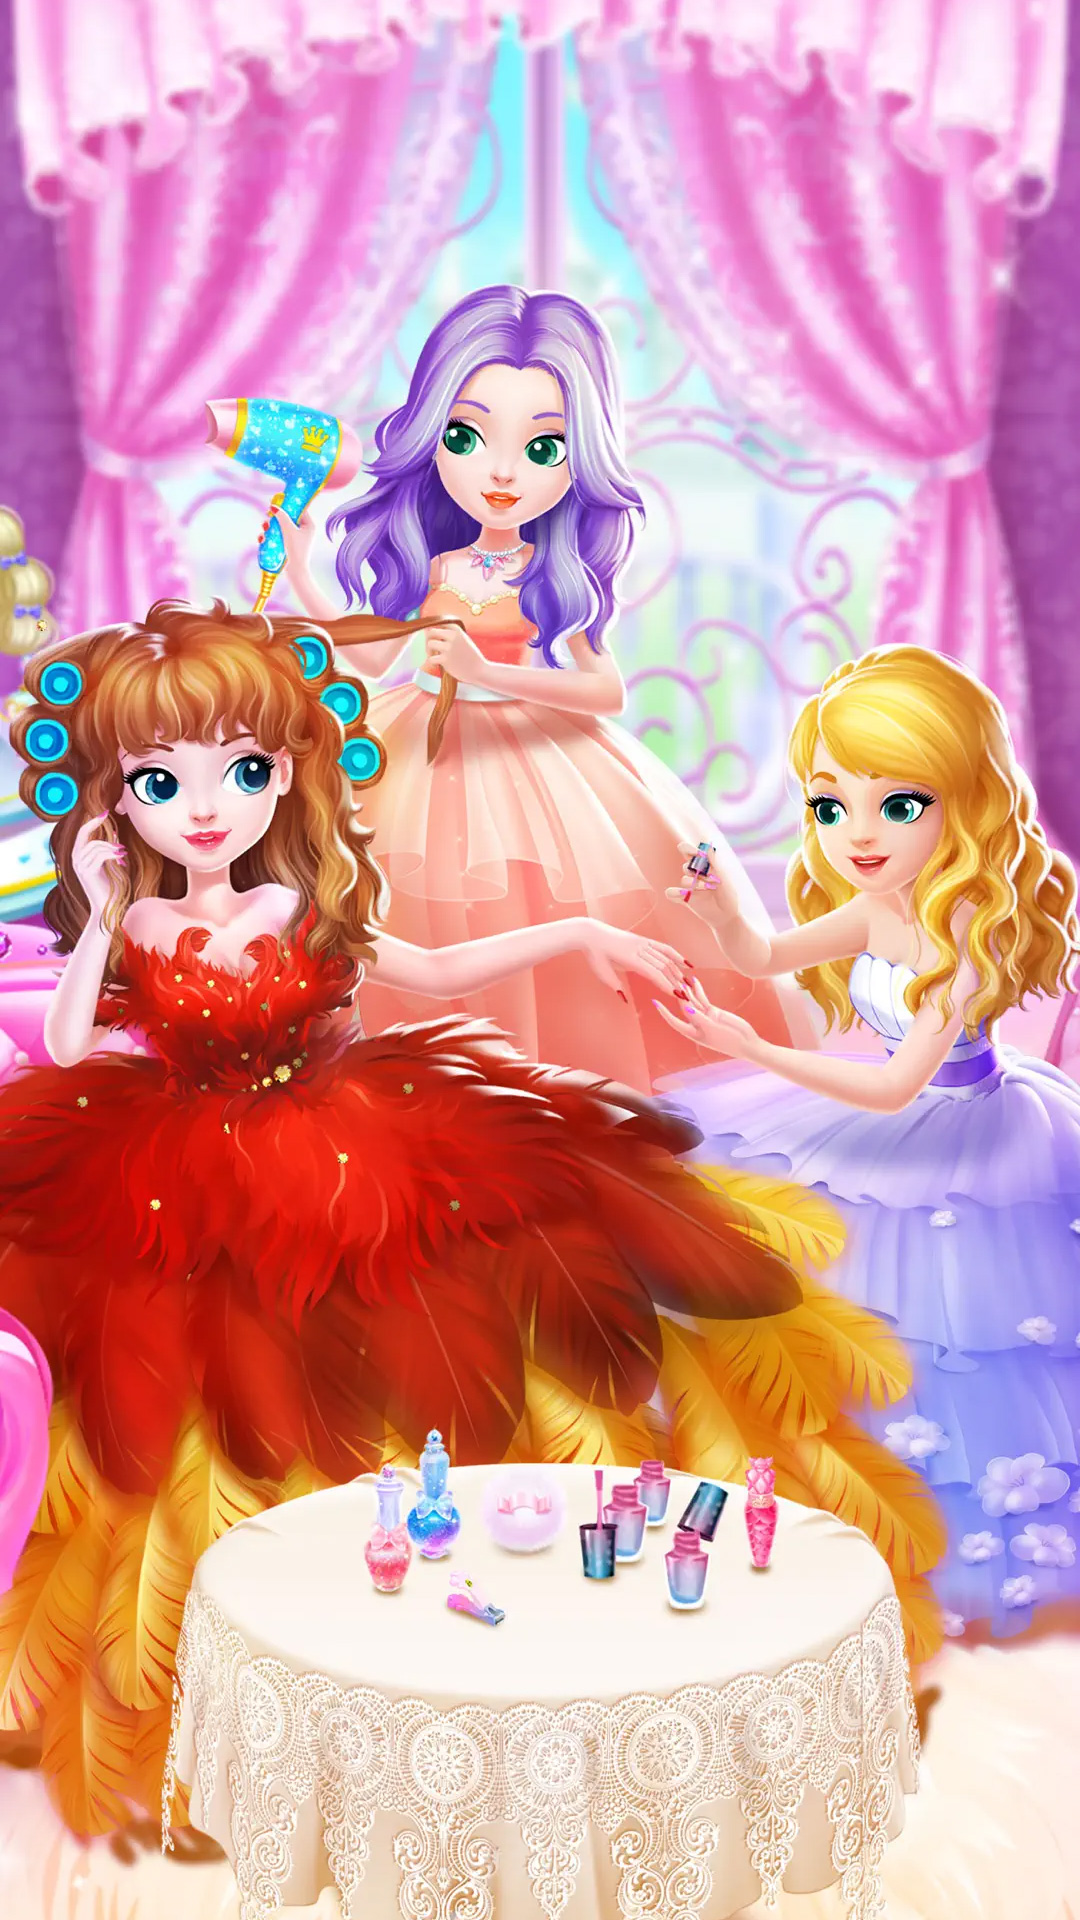 公主时装舞会游戏截图3